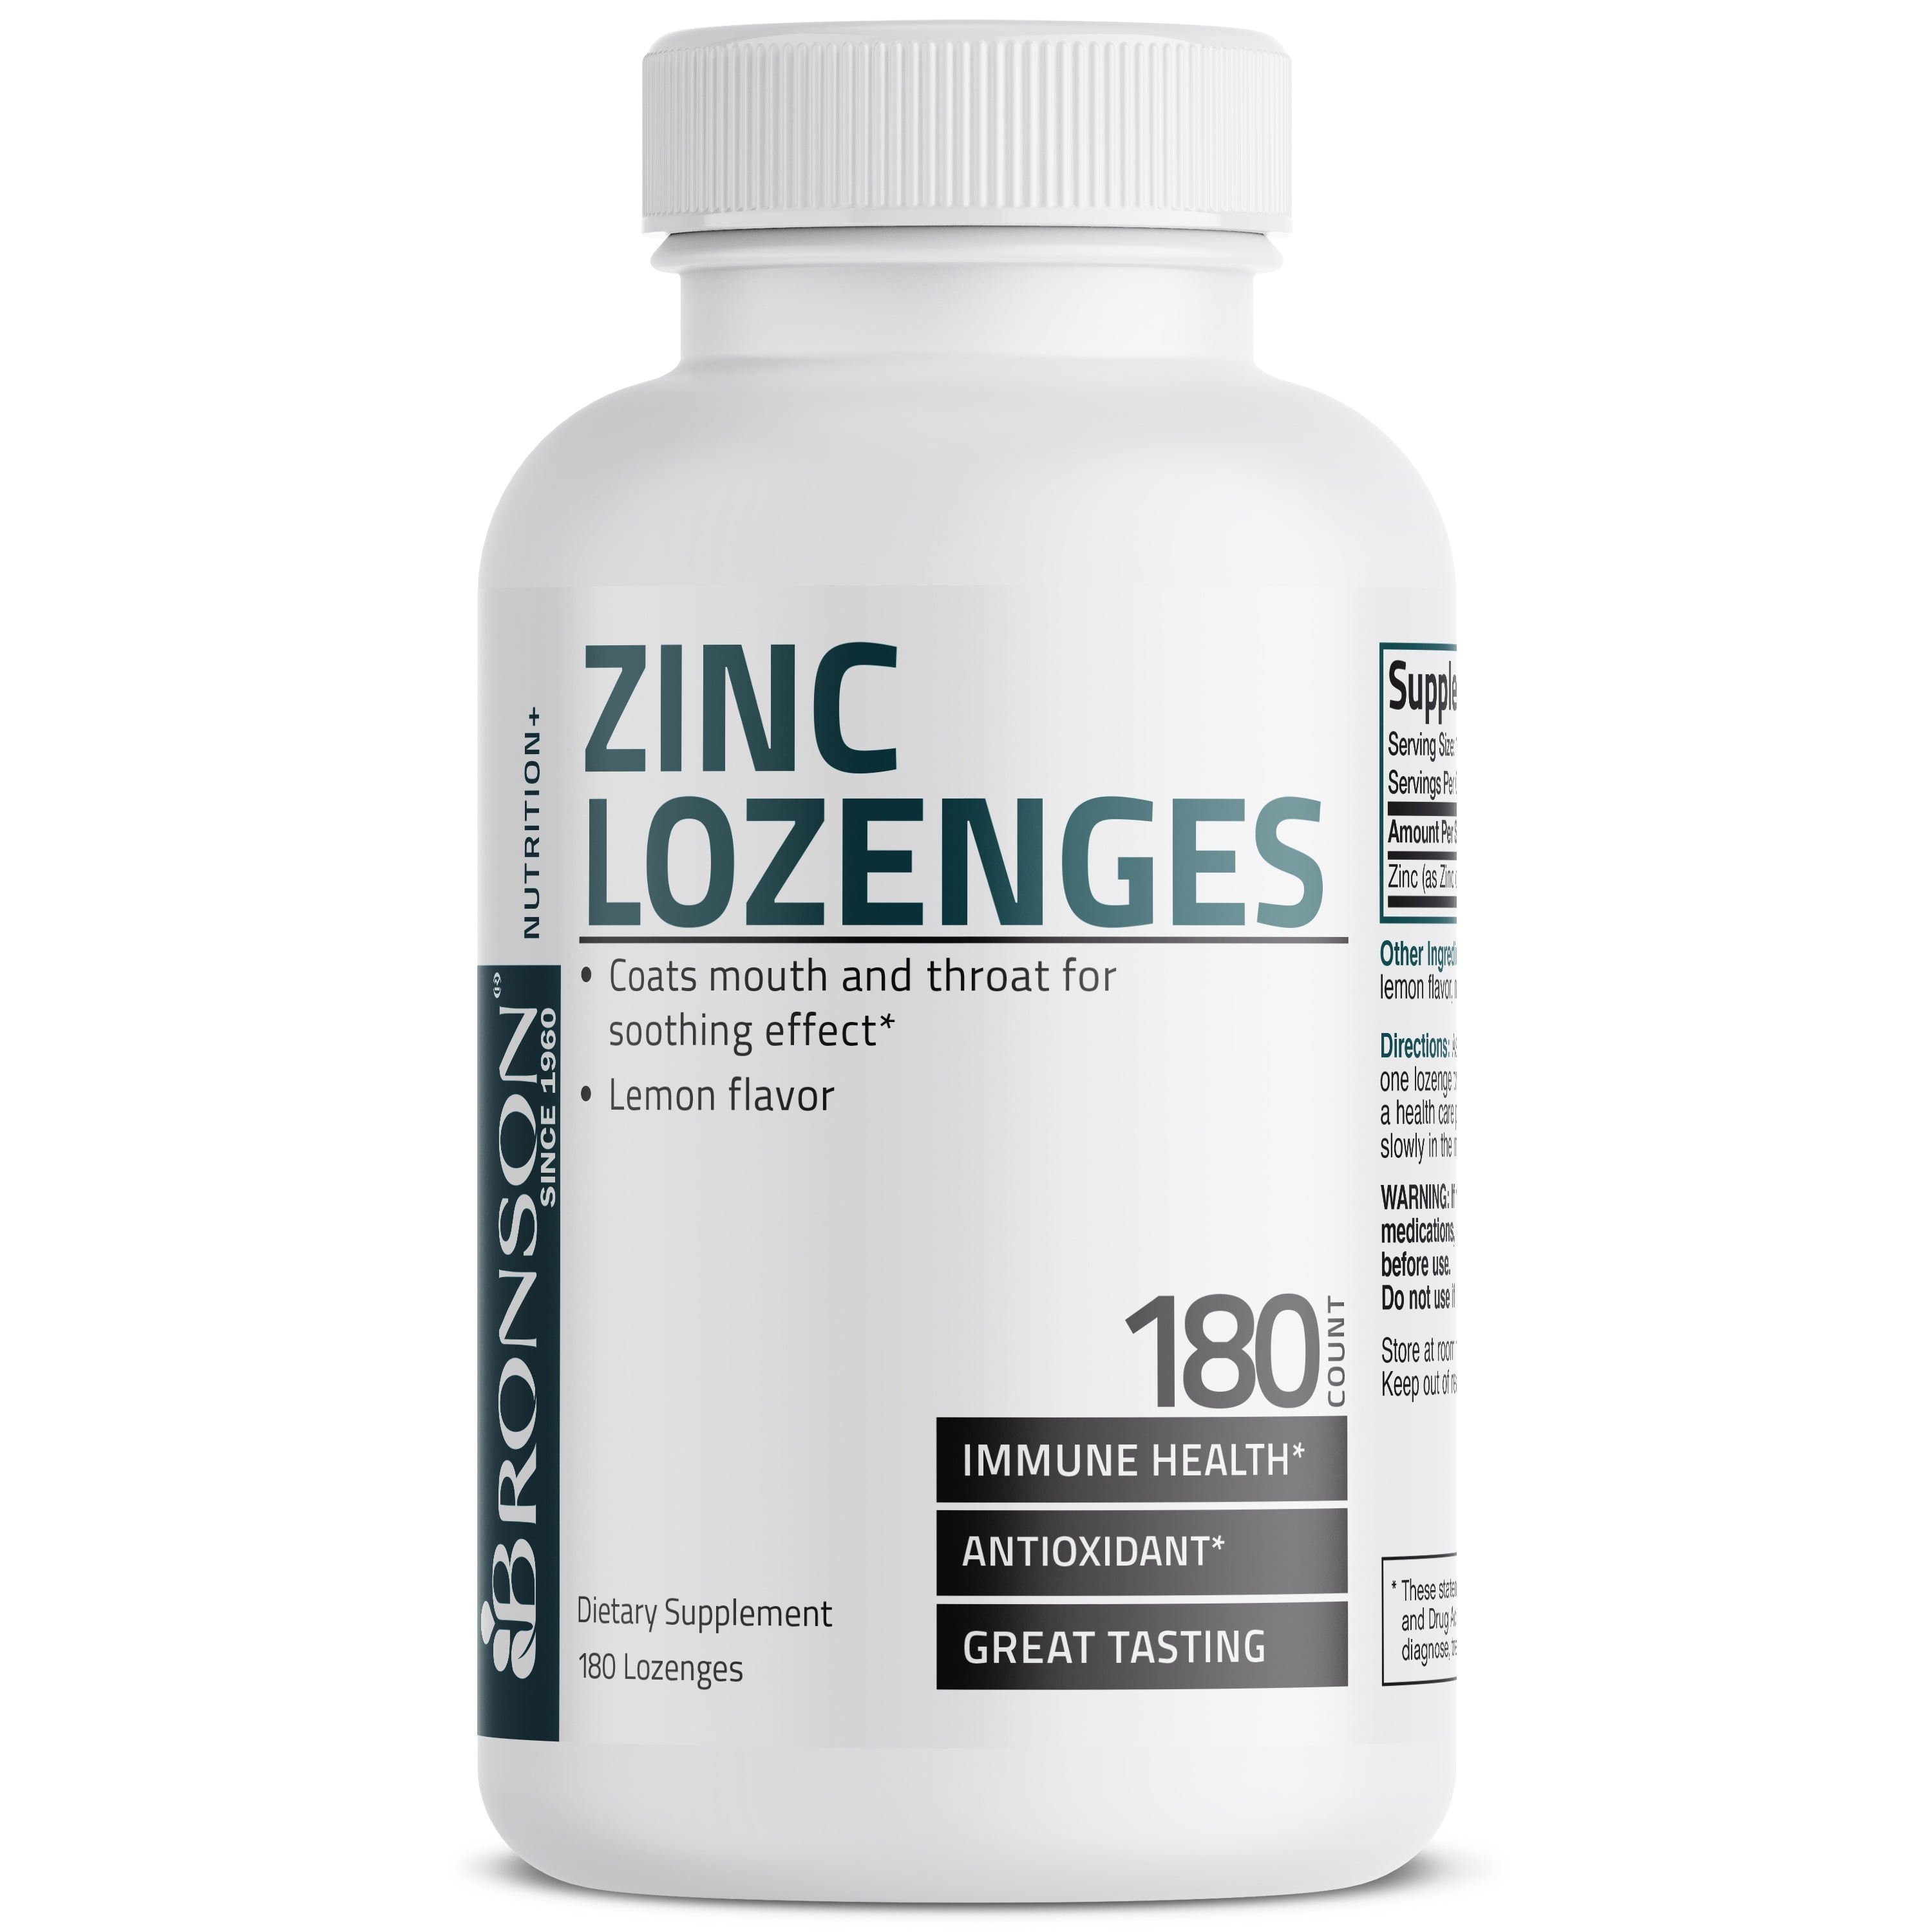 Zinc Lozenges - Lemon - 23 mg - 180 Lozenges view 1 of 4